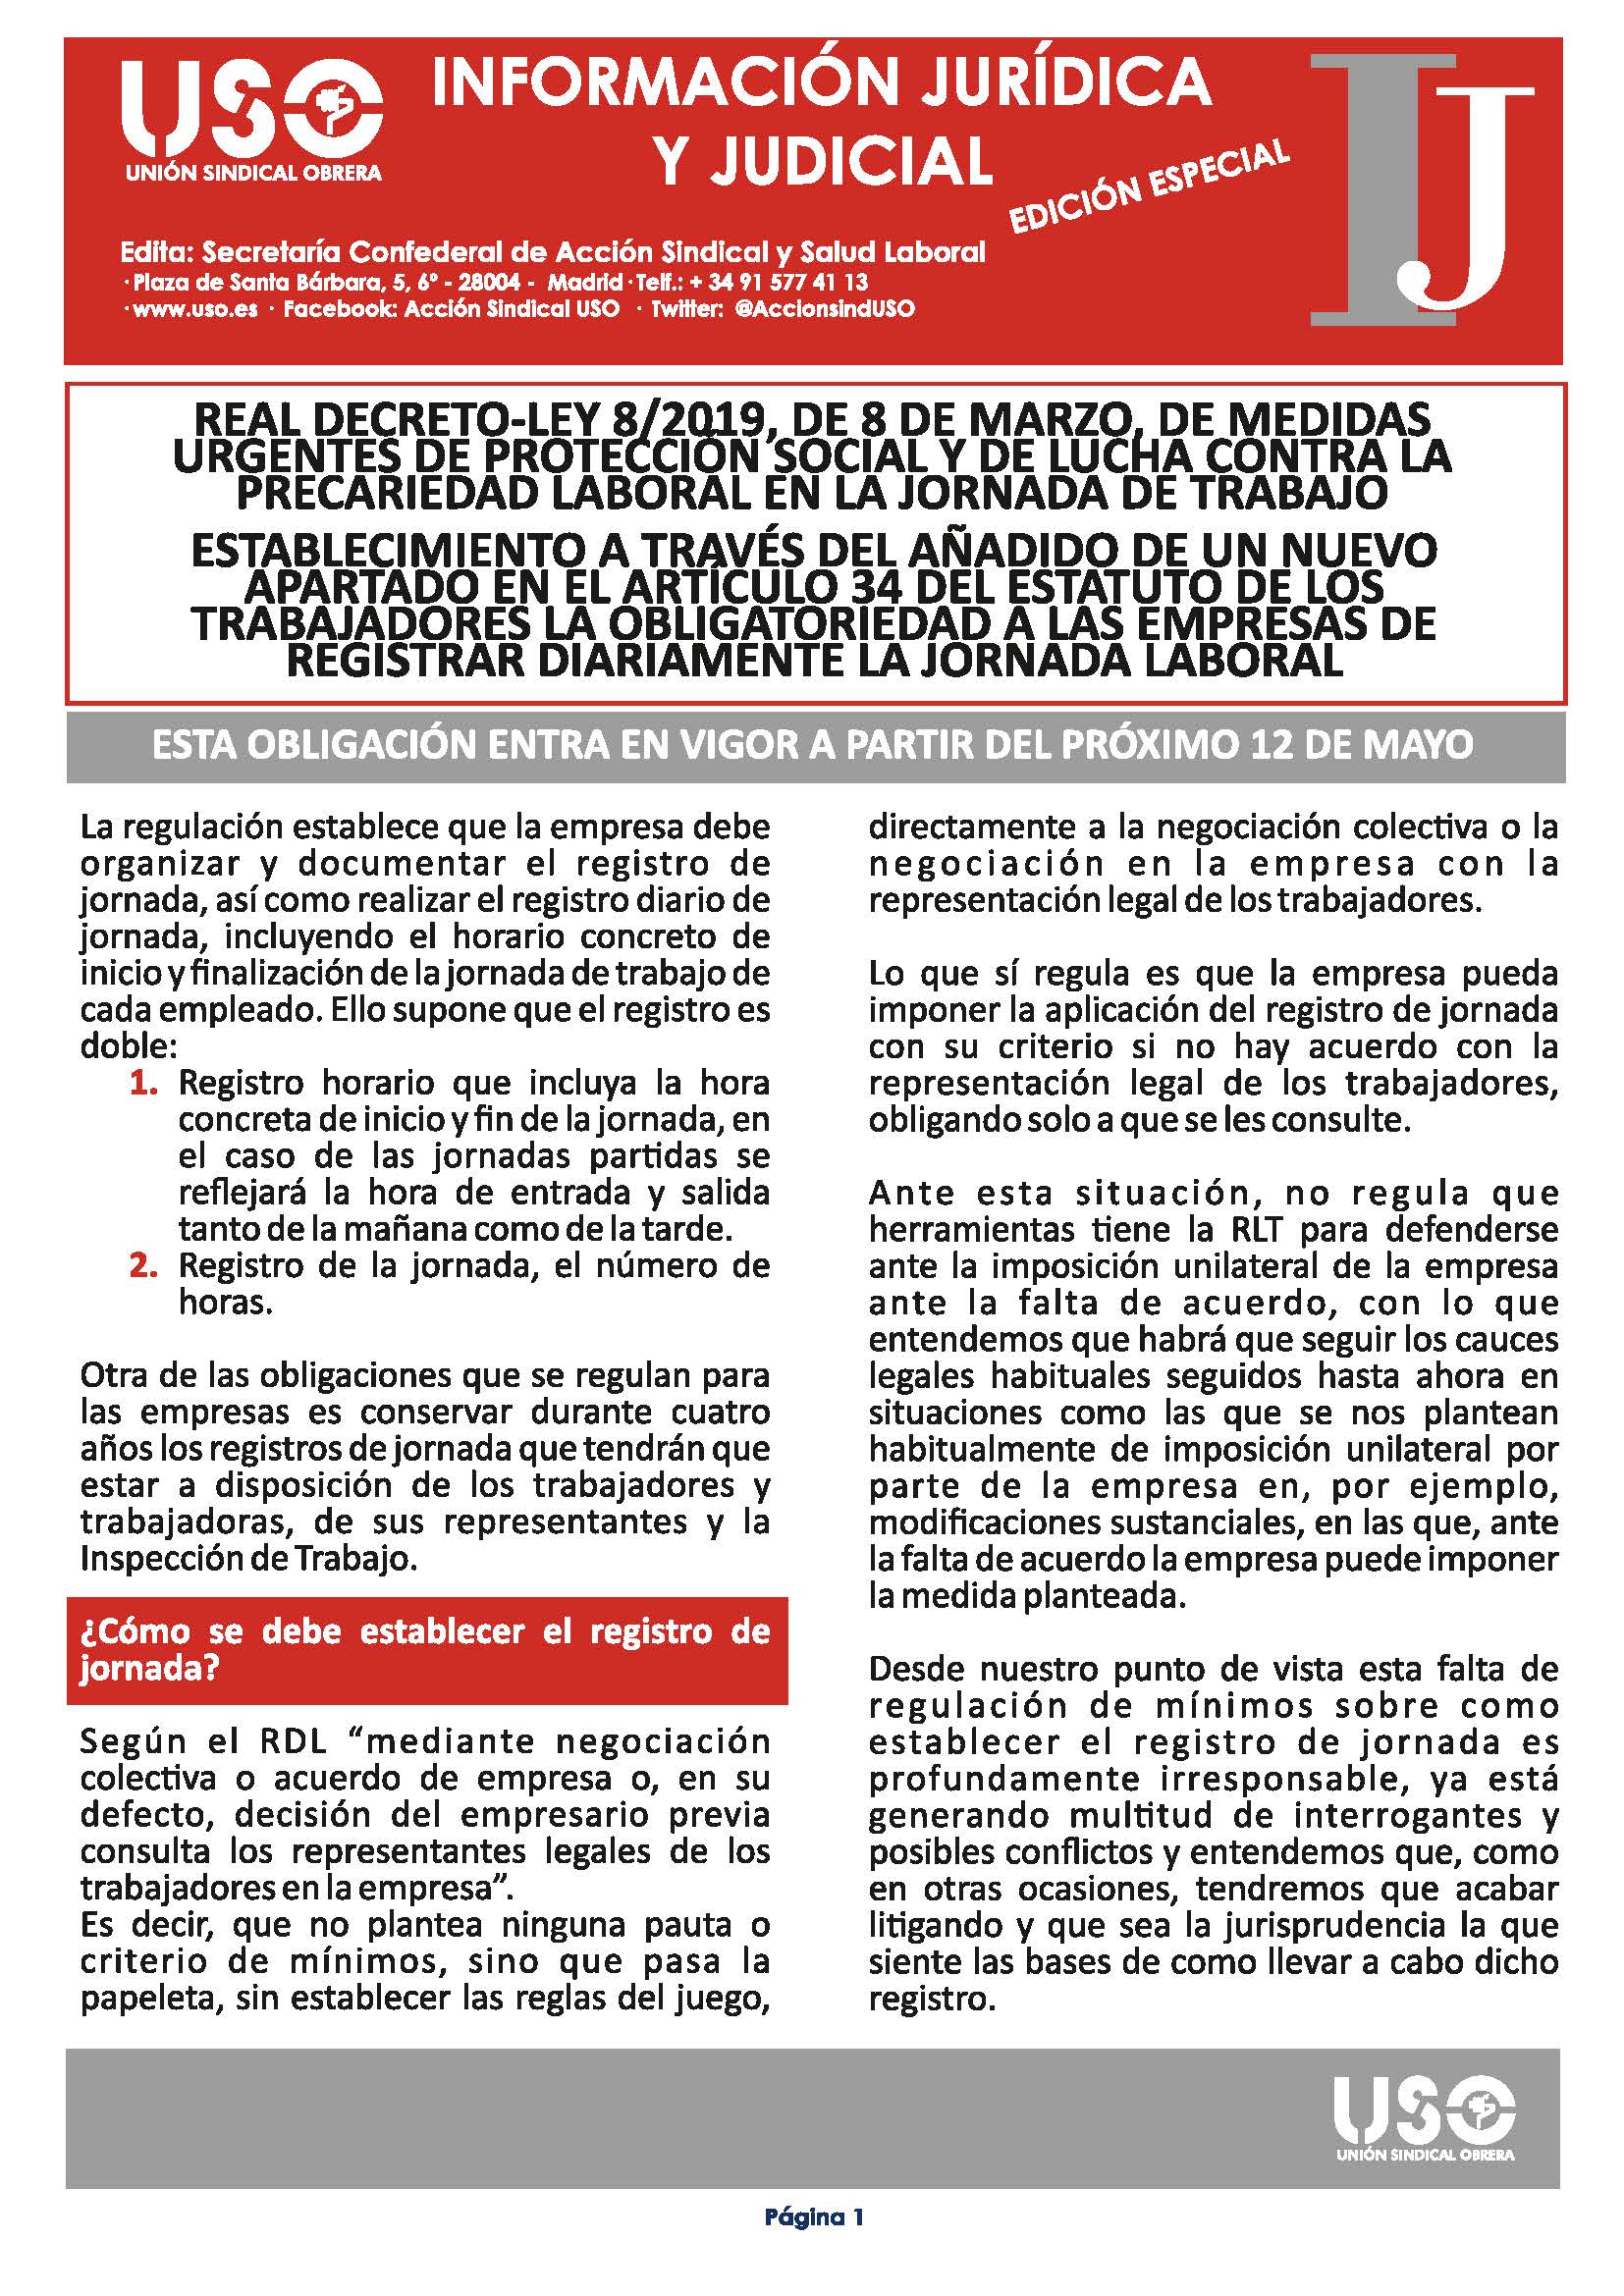 Información Jurídica y Judicial. Edición especial Registro de Jornada